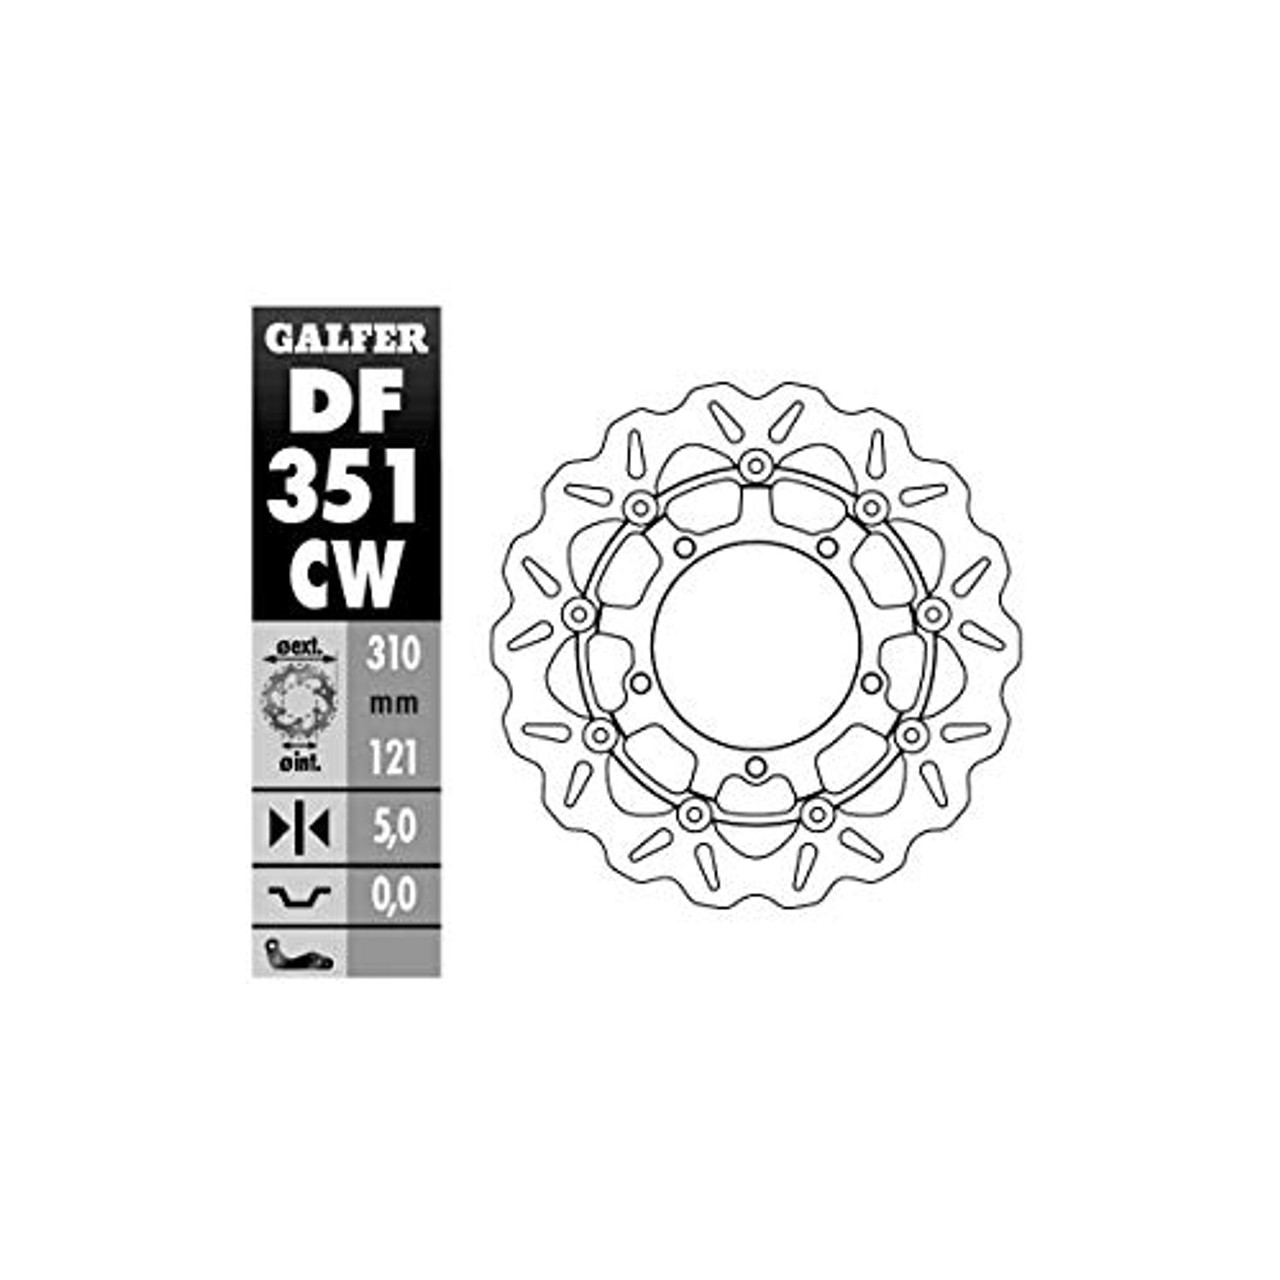 Galfer DF351CW